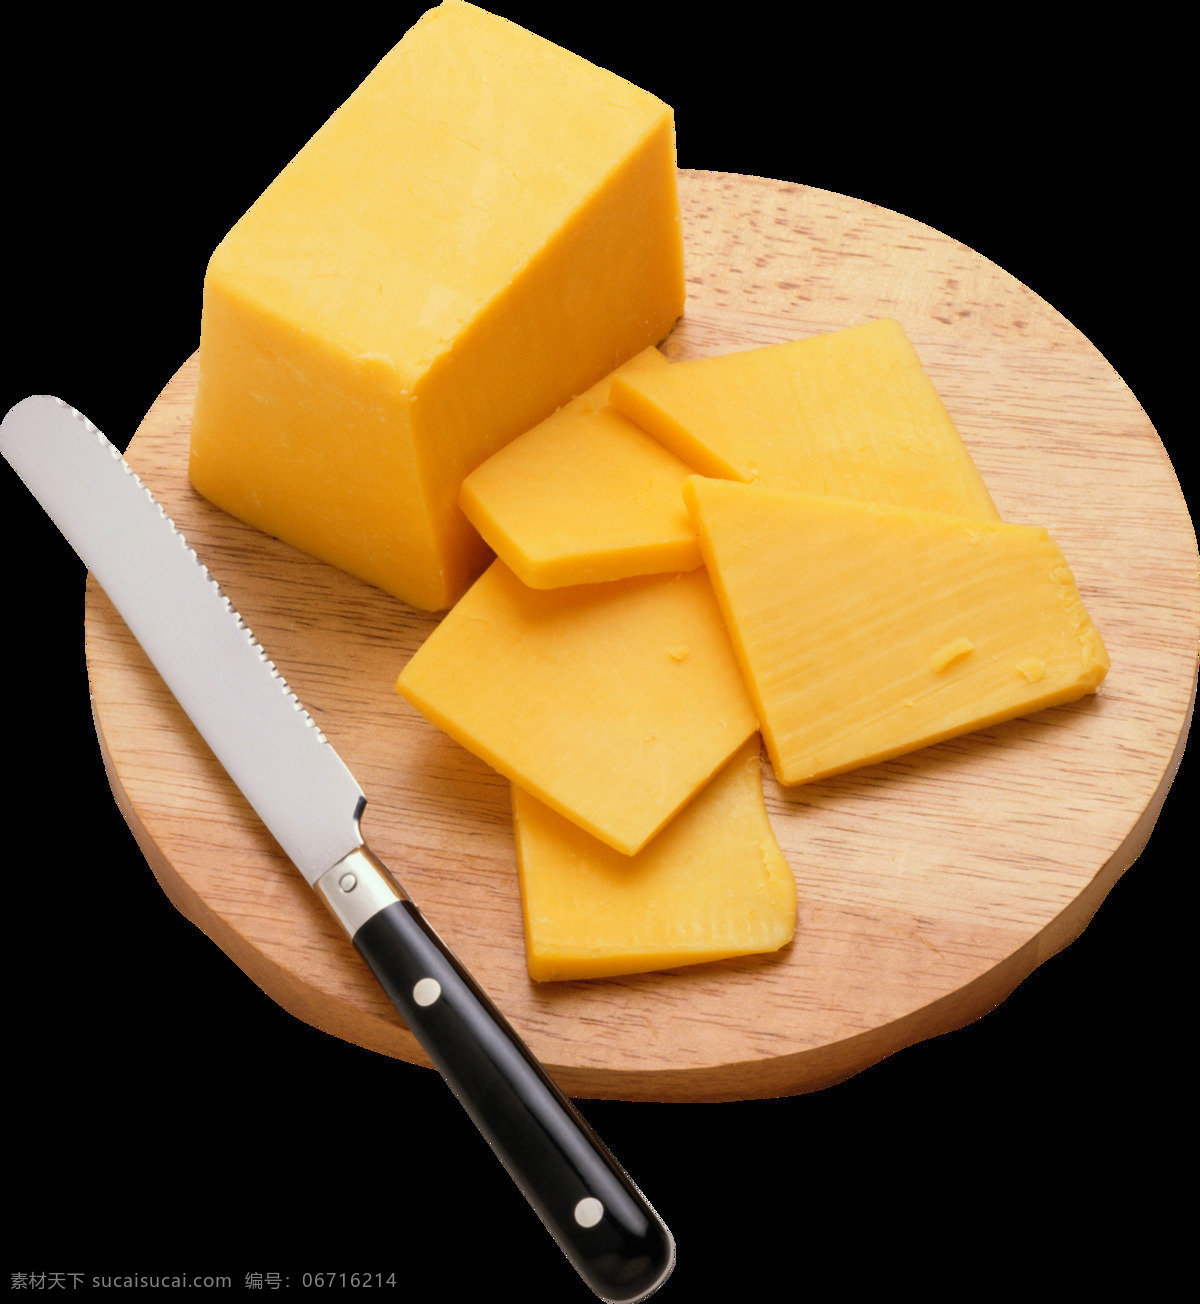 芝士图片 奶酪 芝士 乳酪 芝士块 大块芝士 大块奶酪 芝士片 乳酪片 干酪 起司 奶豆腐 png图 透明图 免扣图 透明背景 透明底 抠图